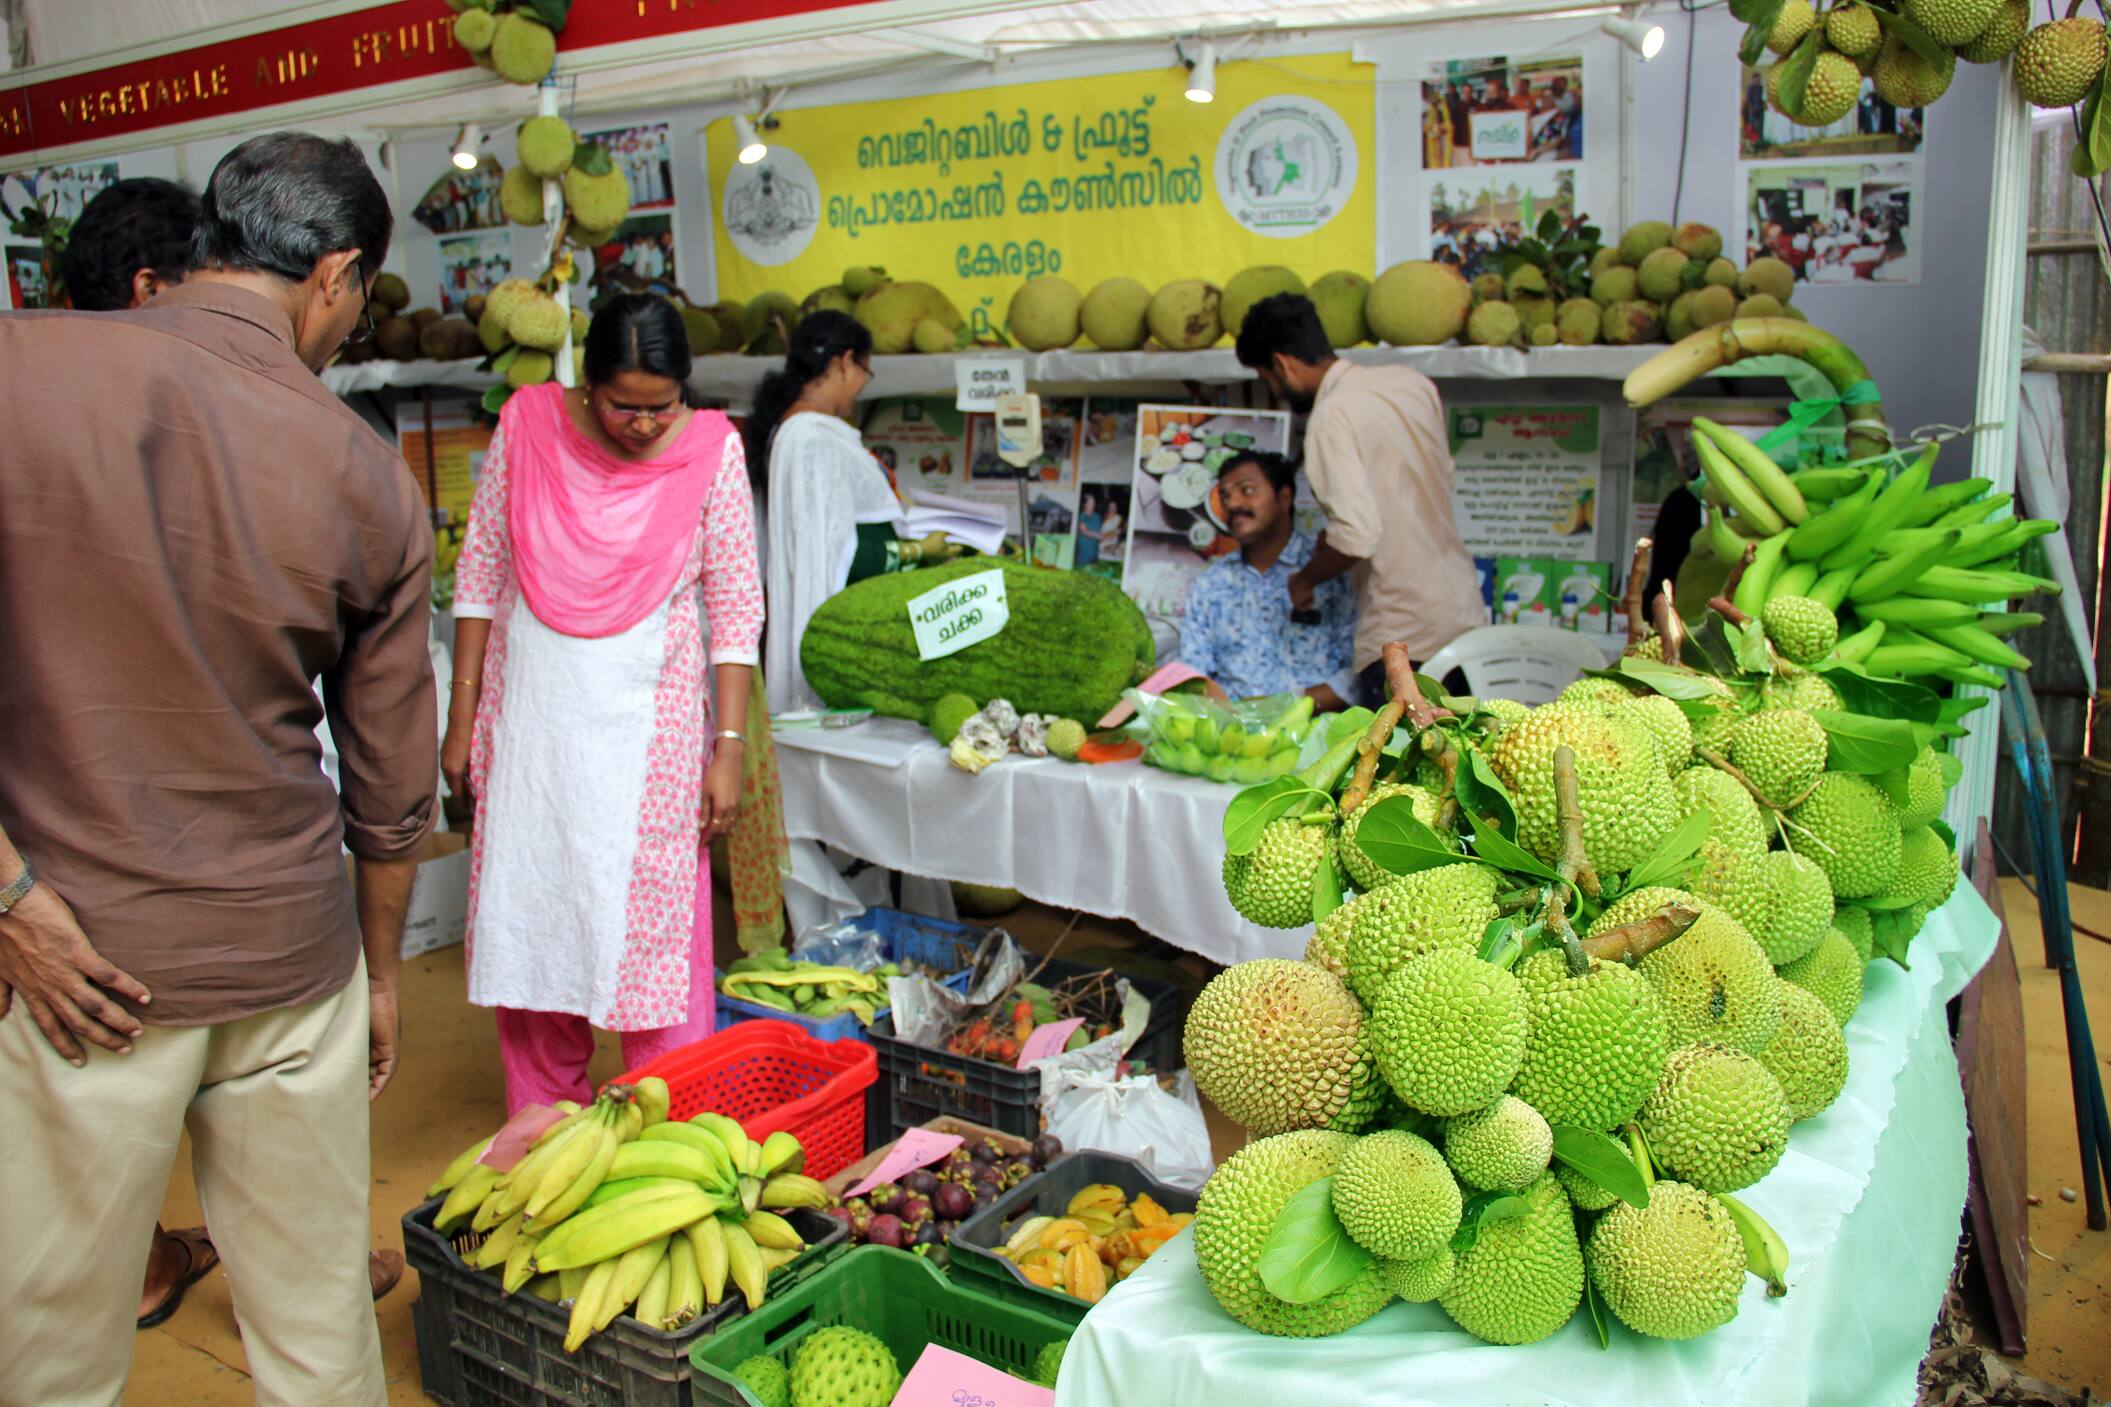 Jackfruit festival in Thrissur